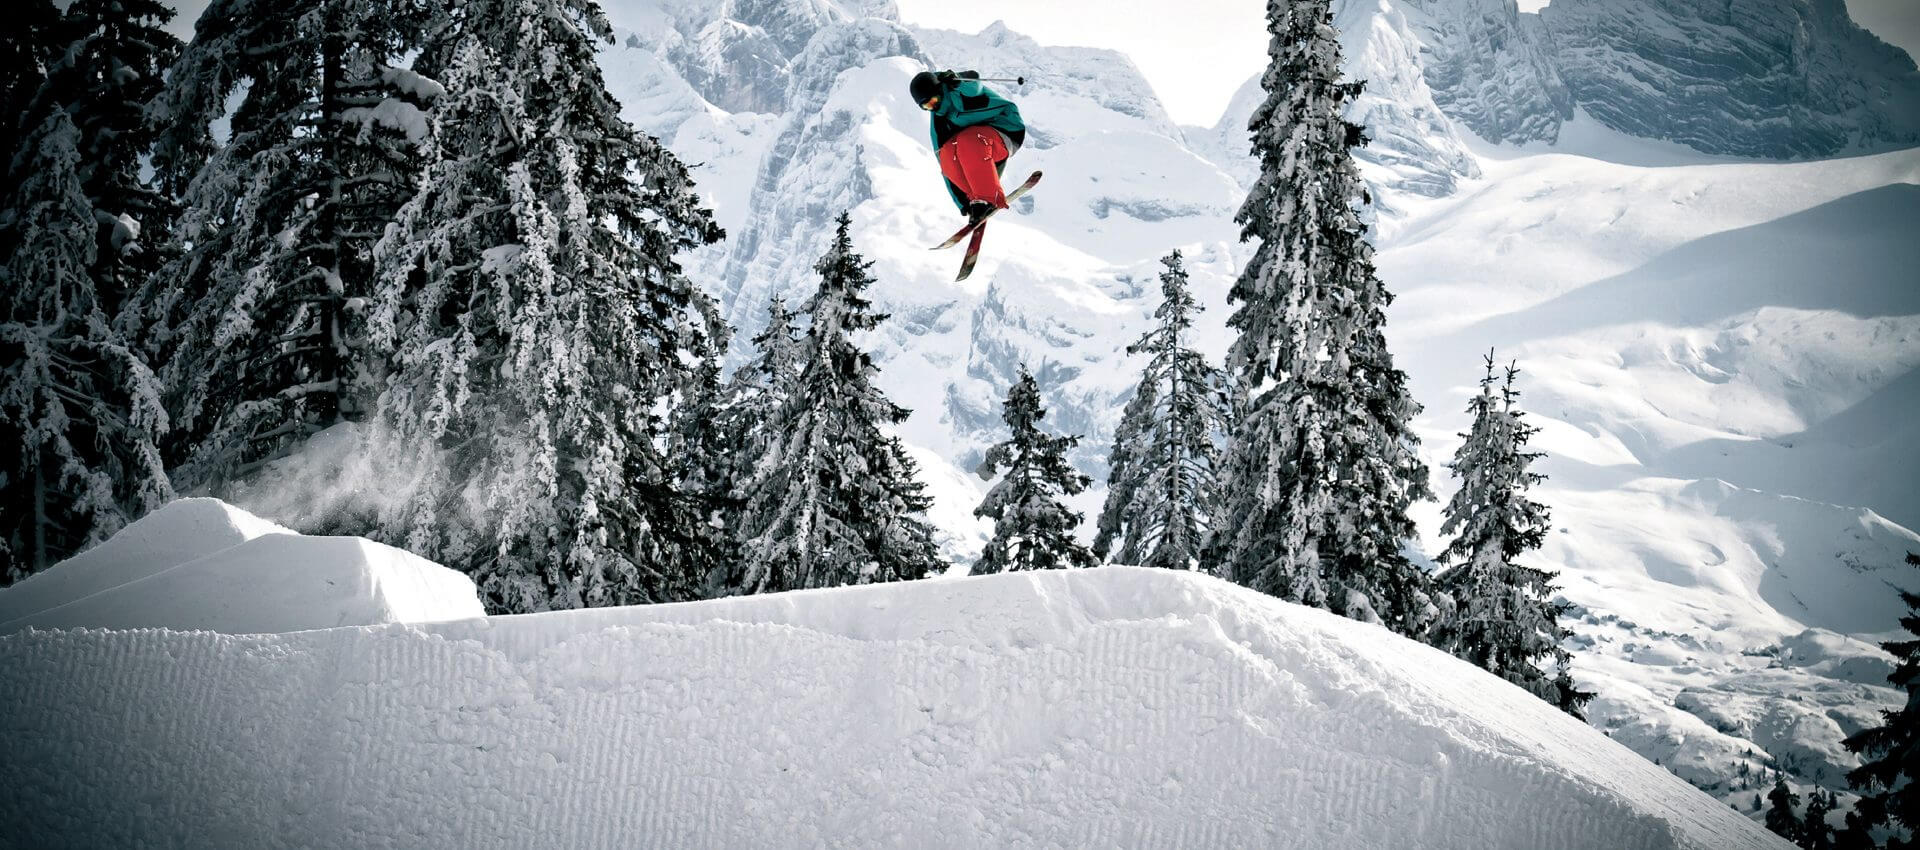 Freestyler auf Skiern hoch in der Luft in tief verschneiter Landschaft